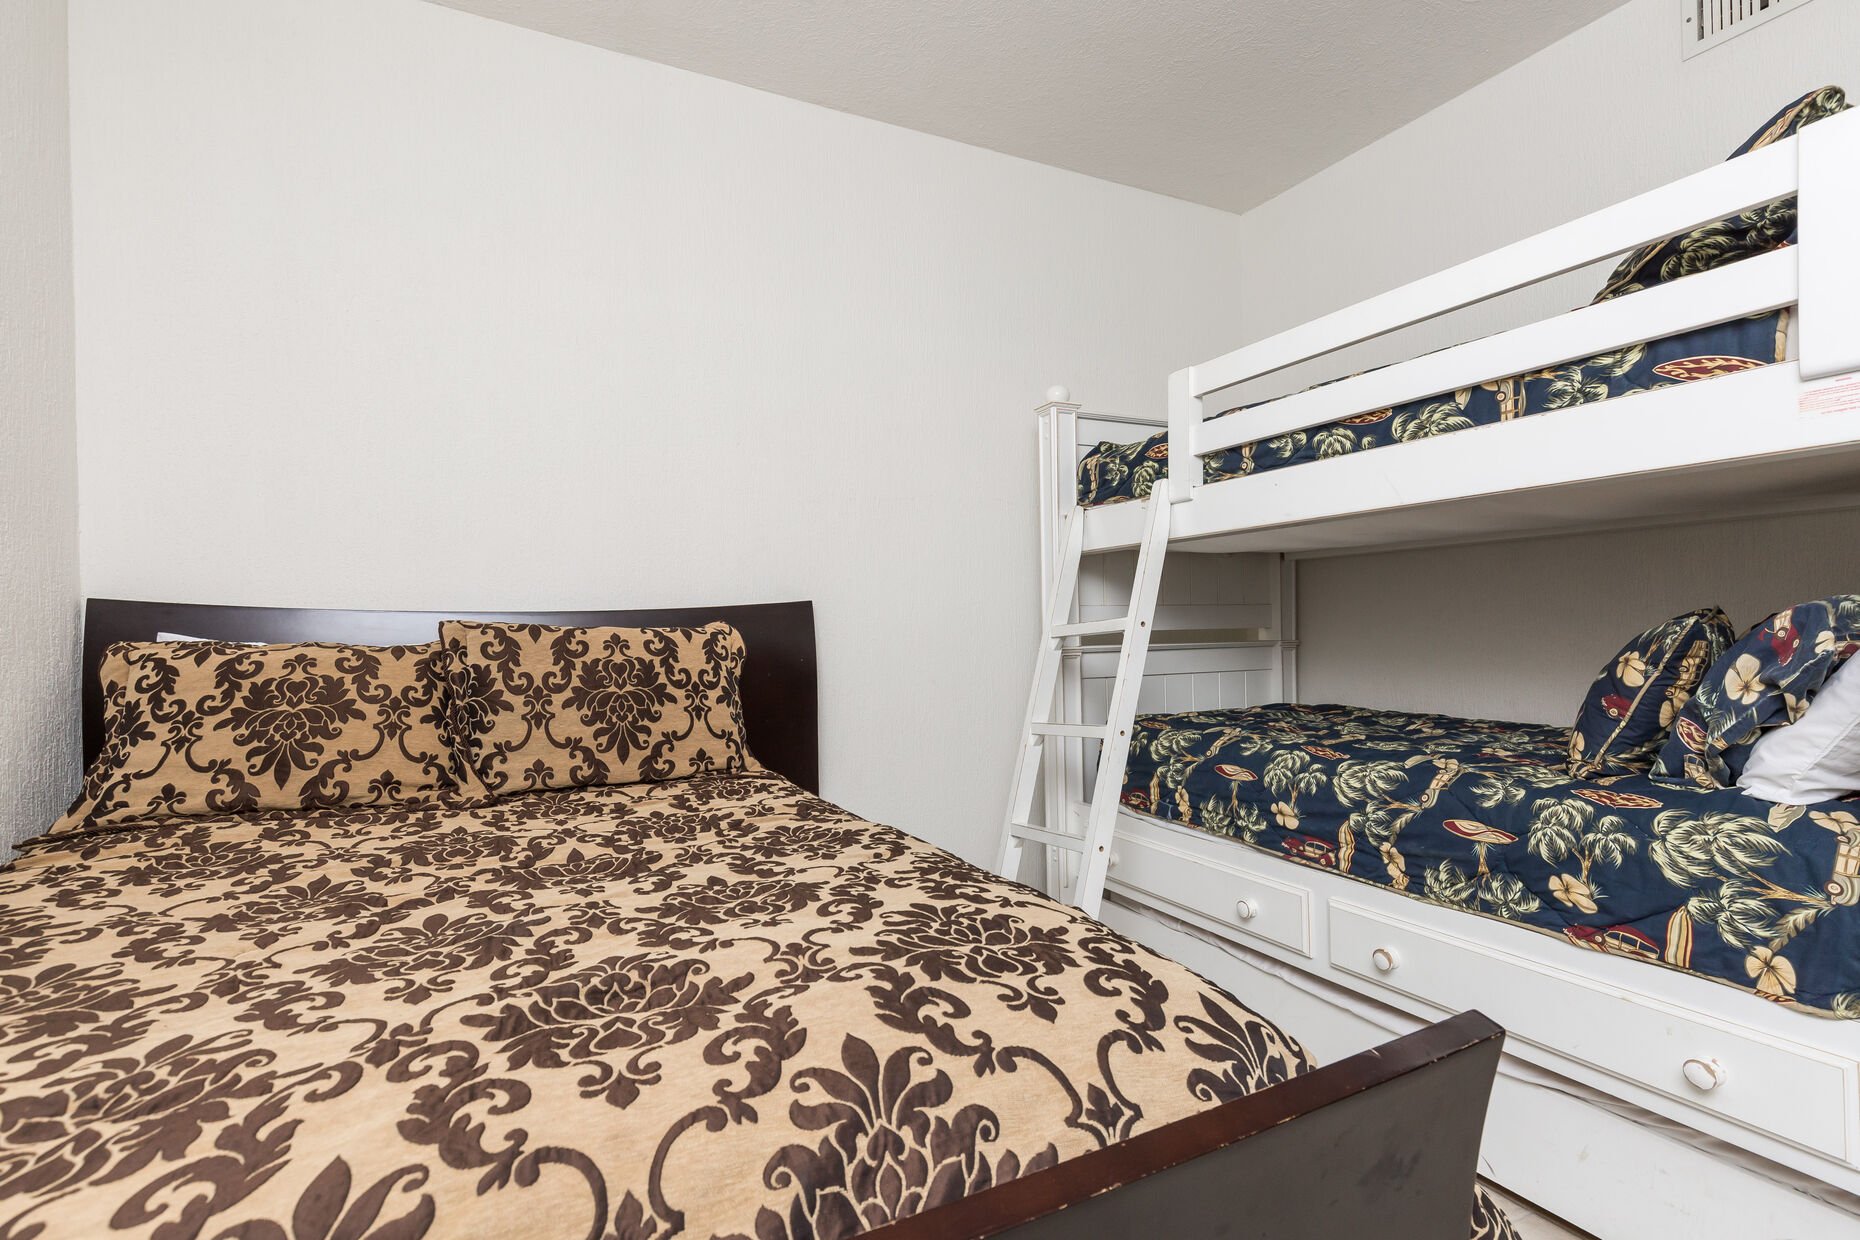 Guest bedroom bunk beds